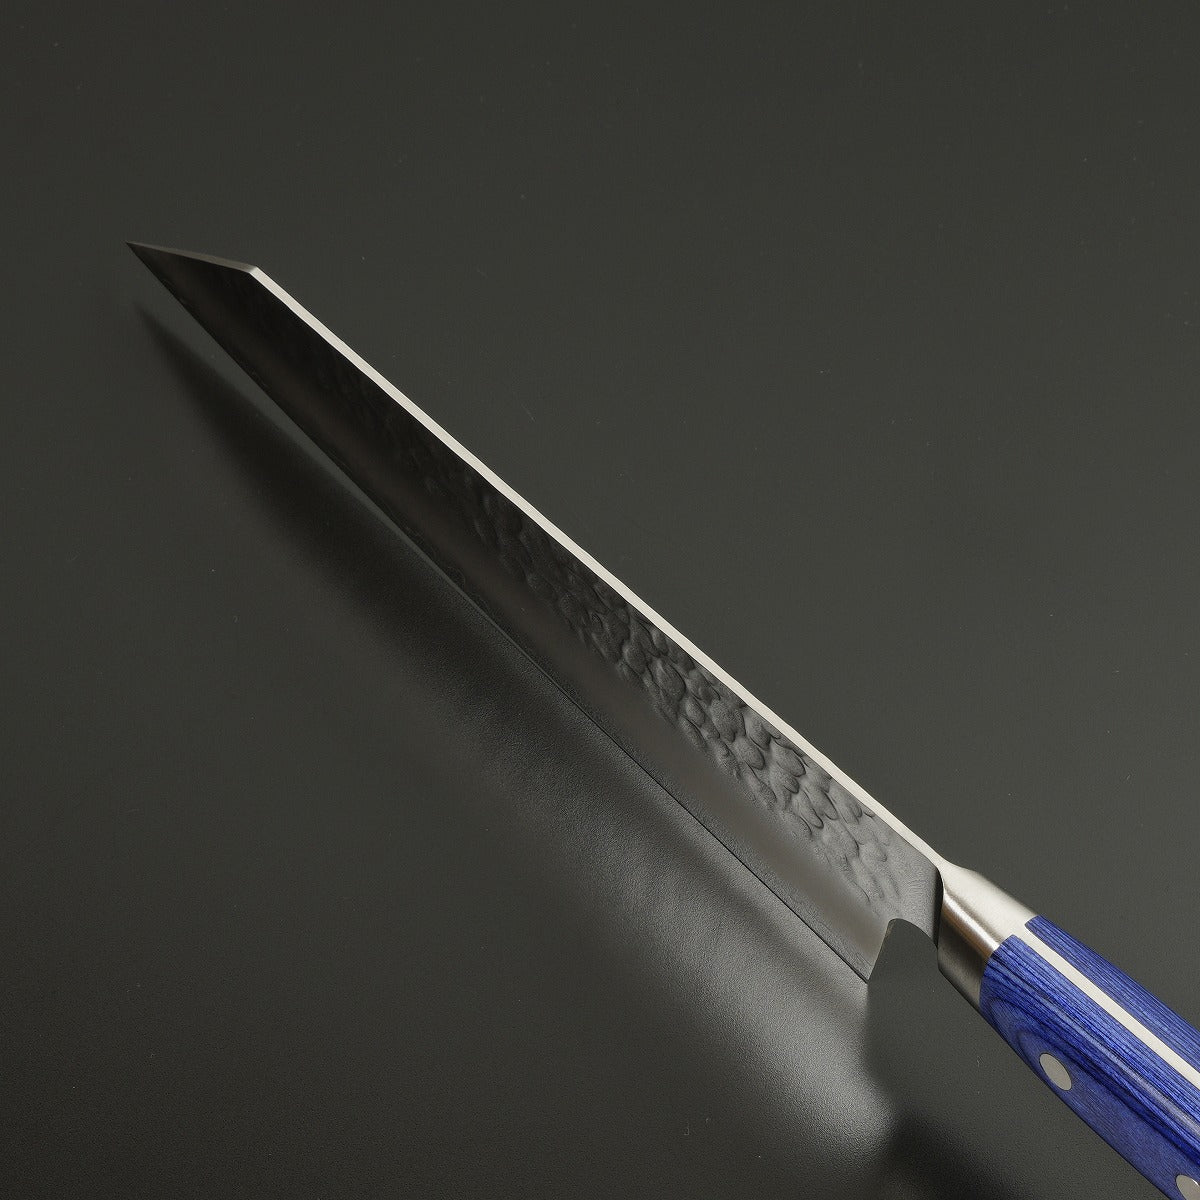 Kiritsuke Santoku (Multi-Purpose Knife) AUS10 with Stainless Hammered Pattern, 190mm